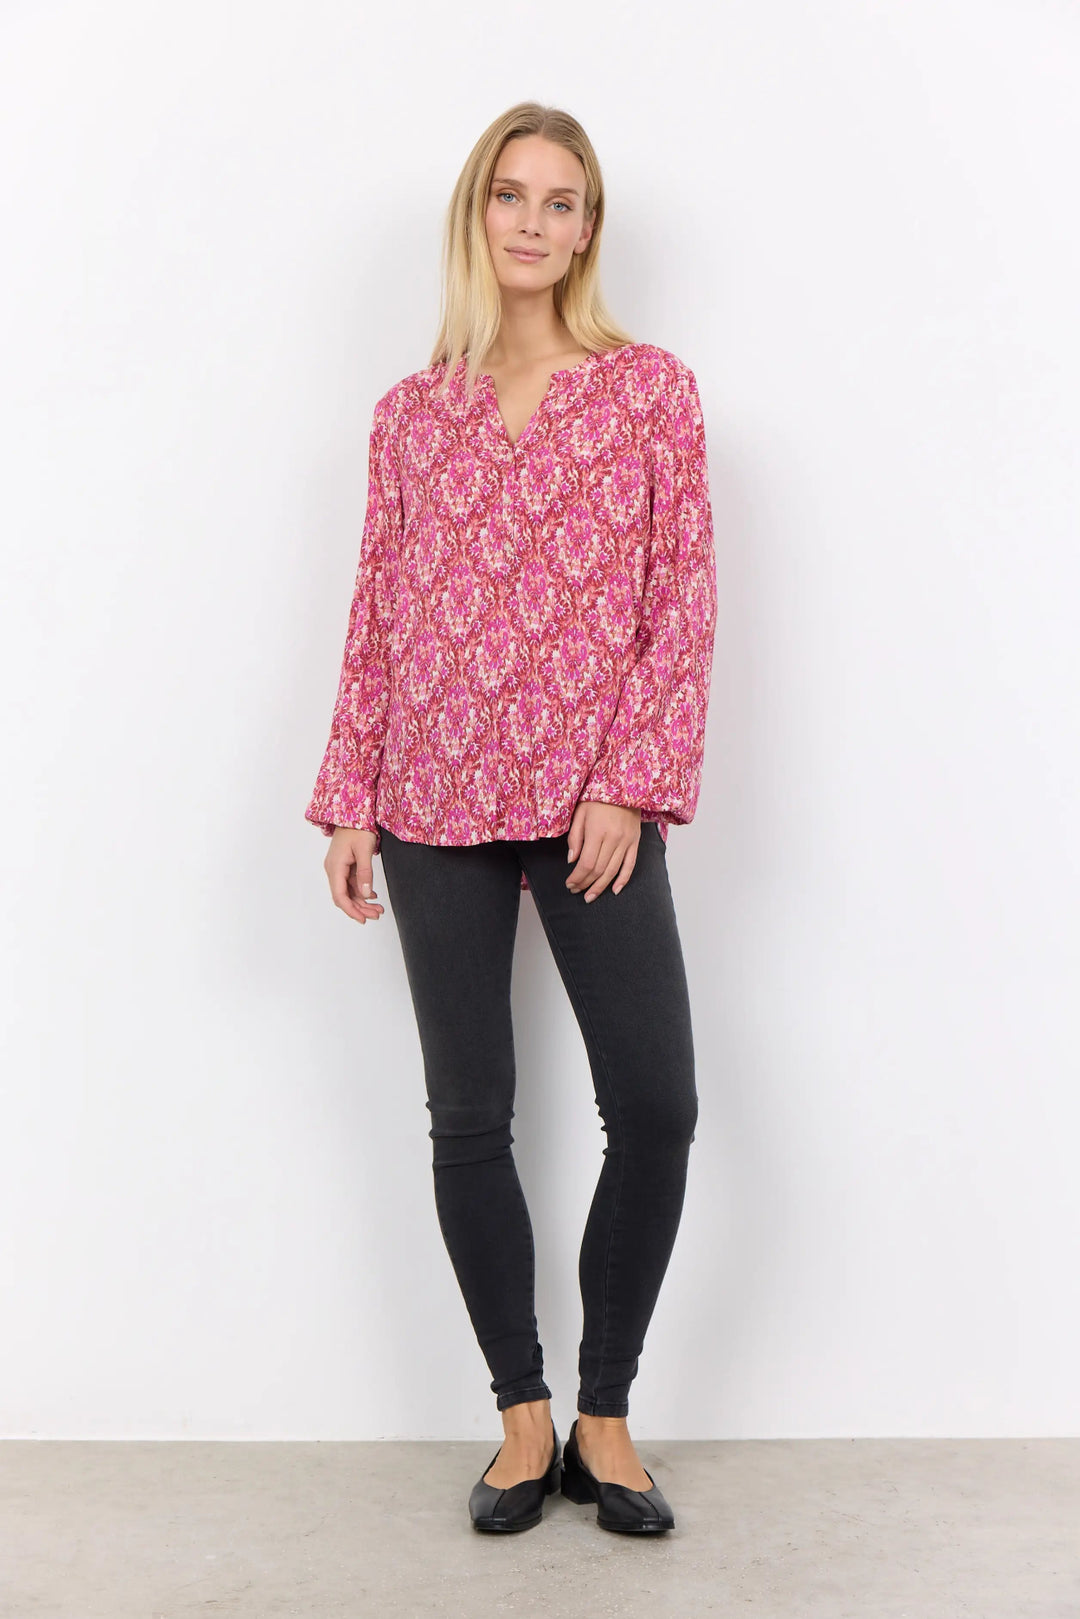 Sc-Dorte 2 Pink Combi | Skjorter og bluser | Smuk - Dameklær på nett